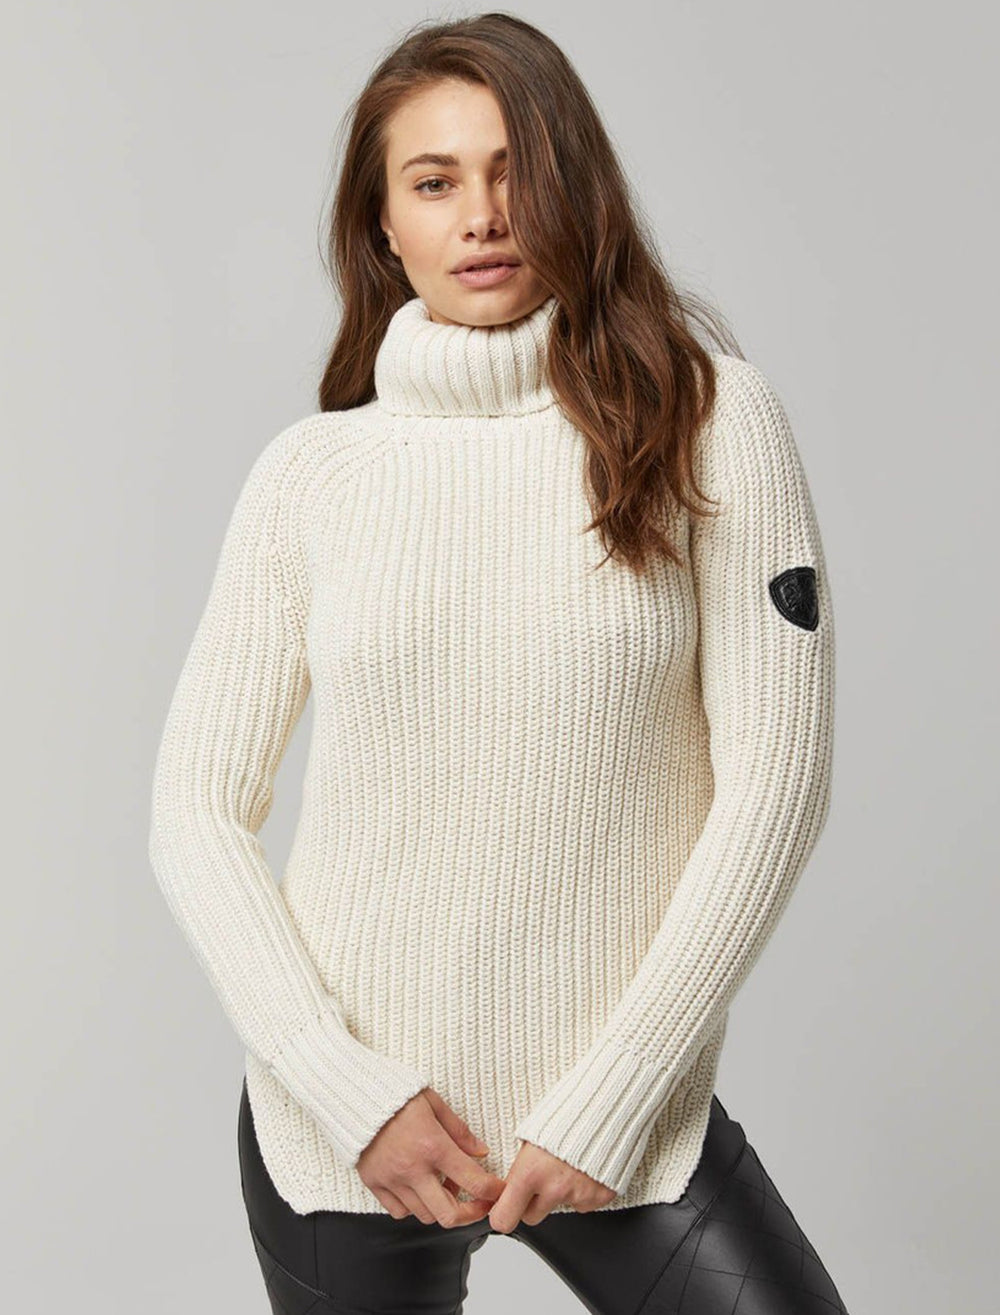 Model wearing Alp N Rock's simone sweater in ivory.